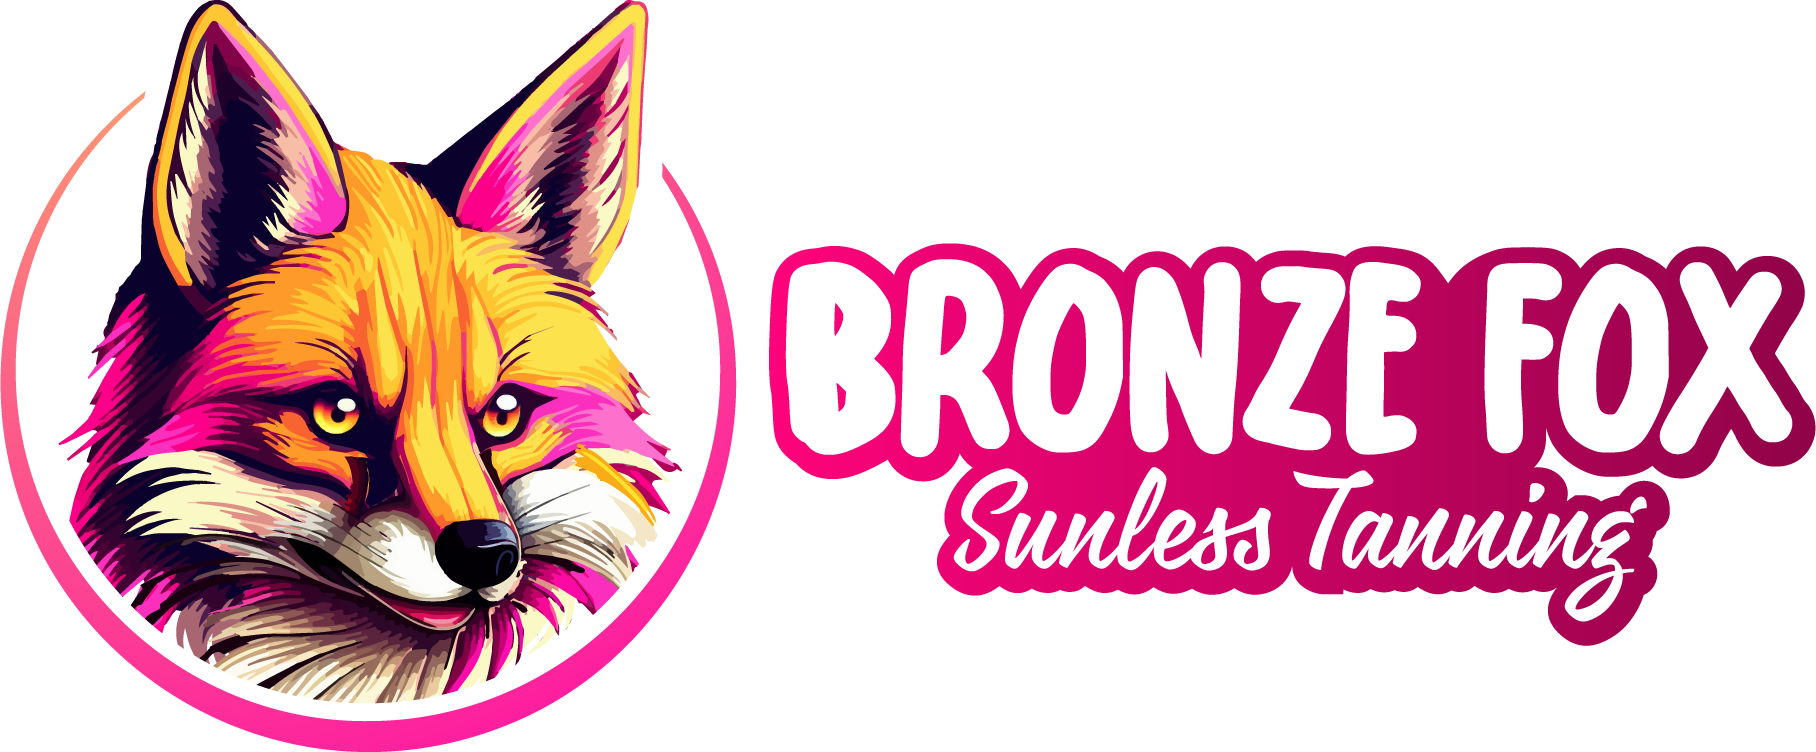 Bronze Fox Sunless